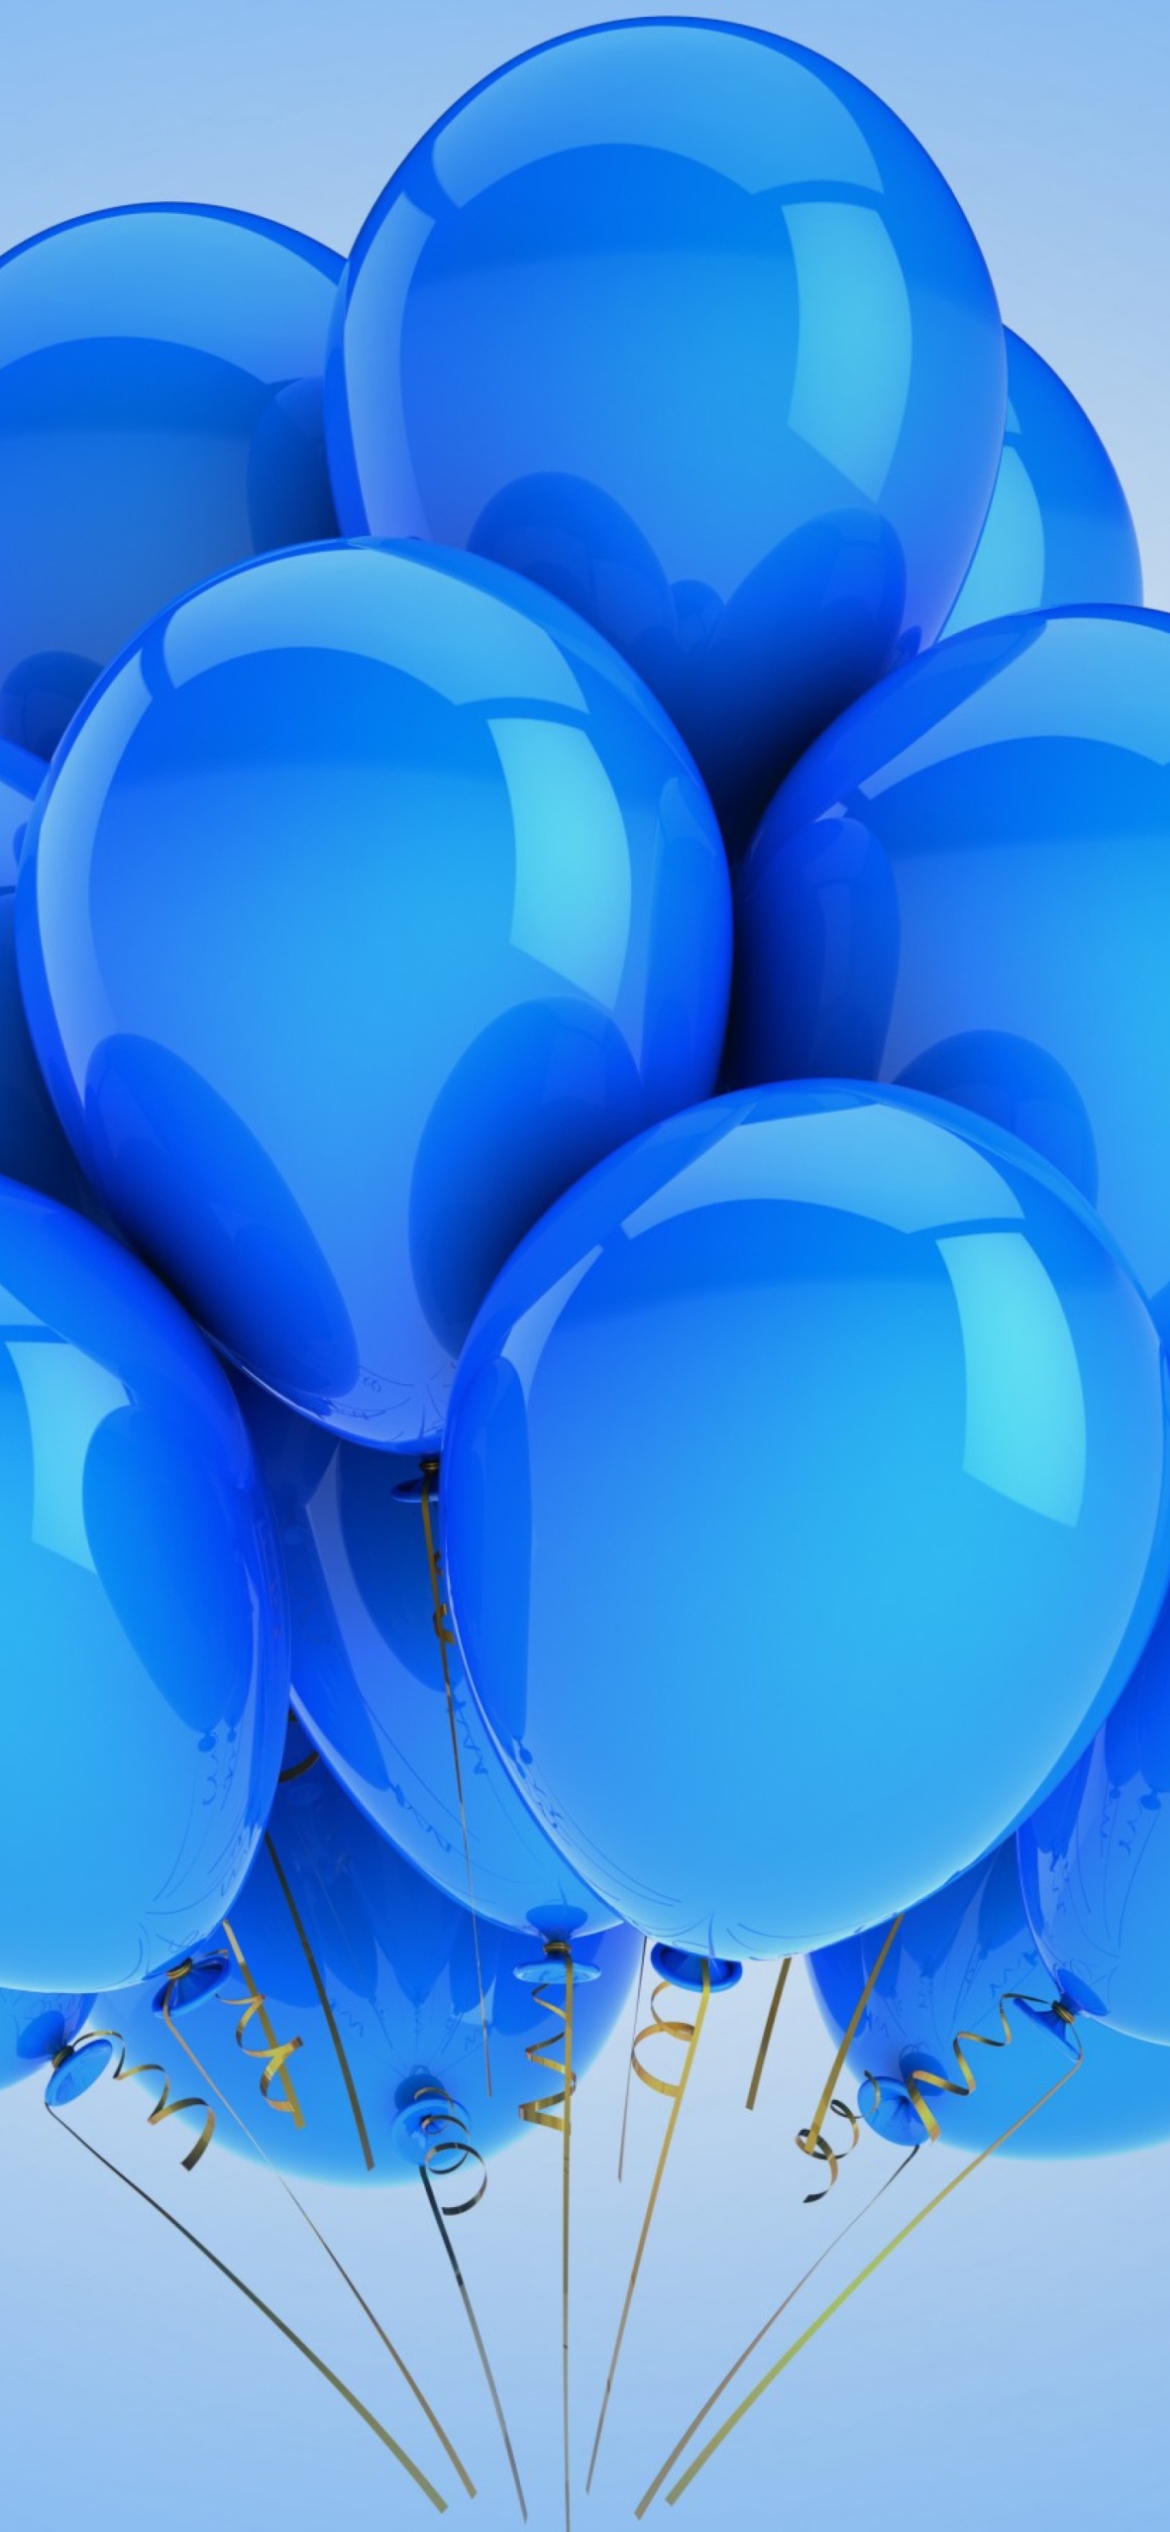 Blue Balloons wallpaper 1170x2532